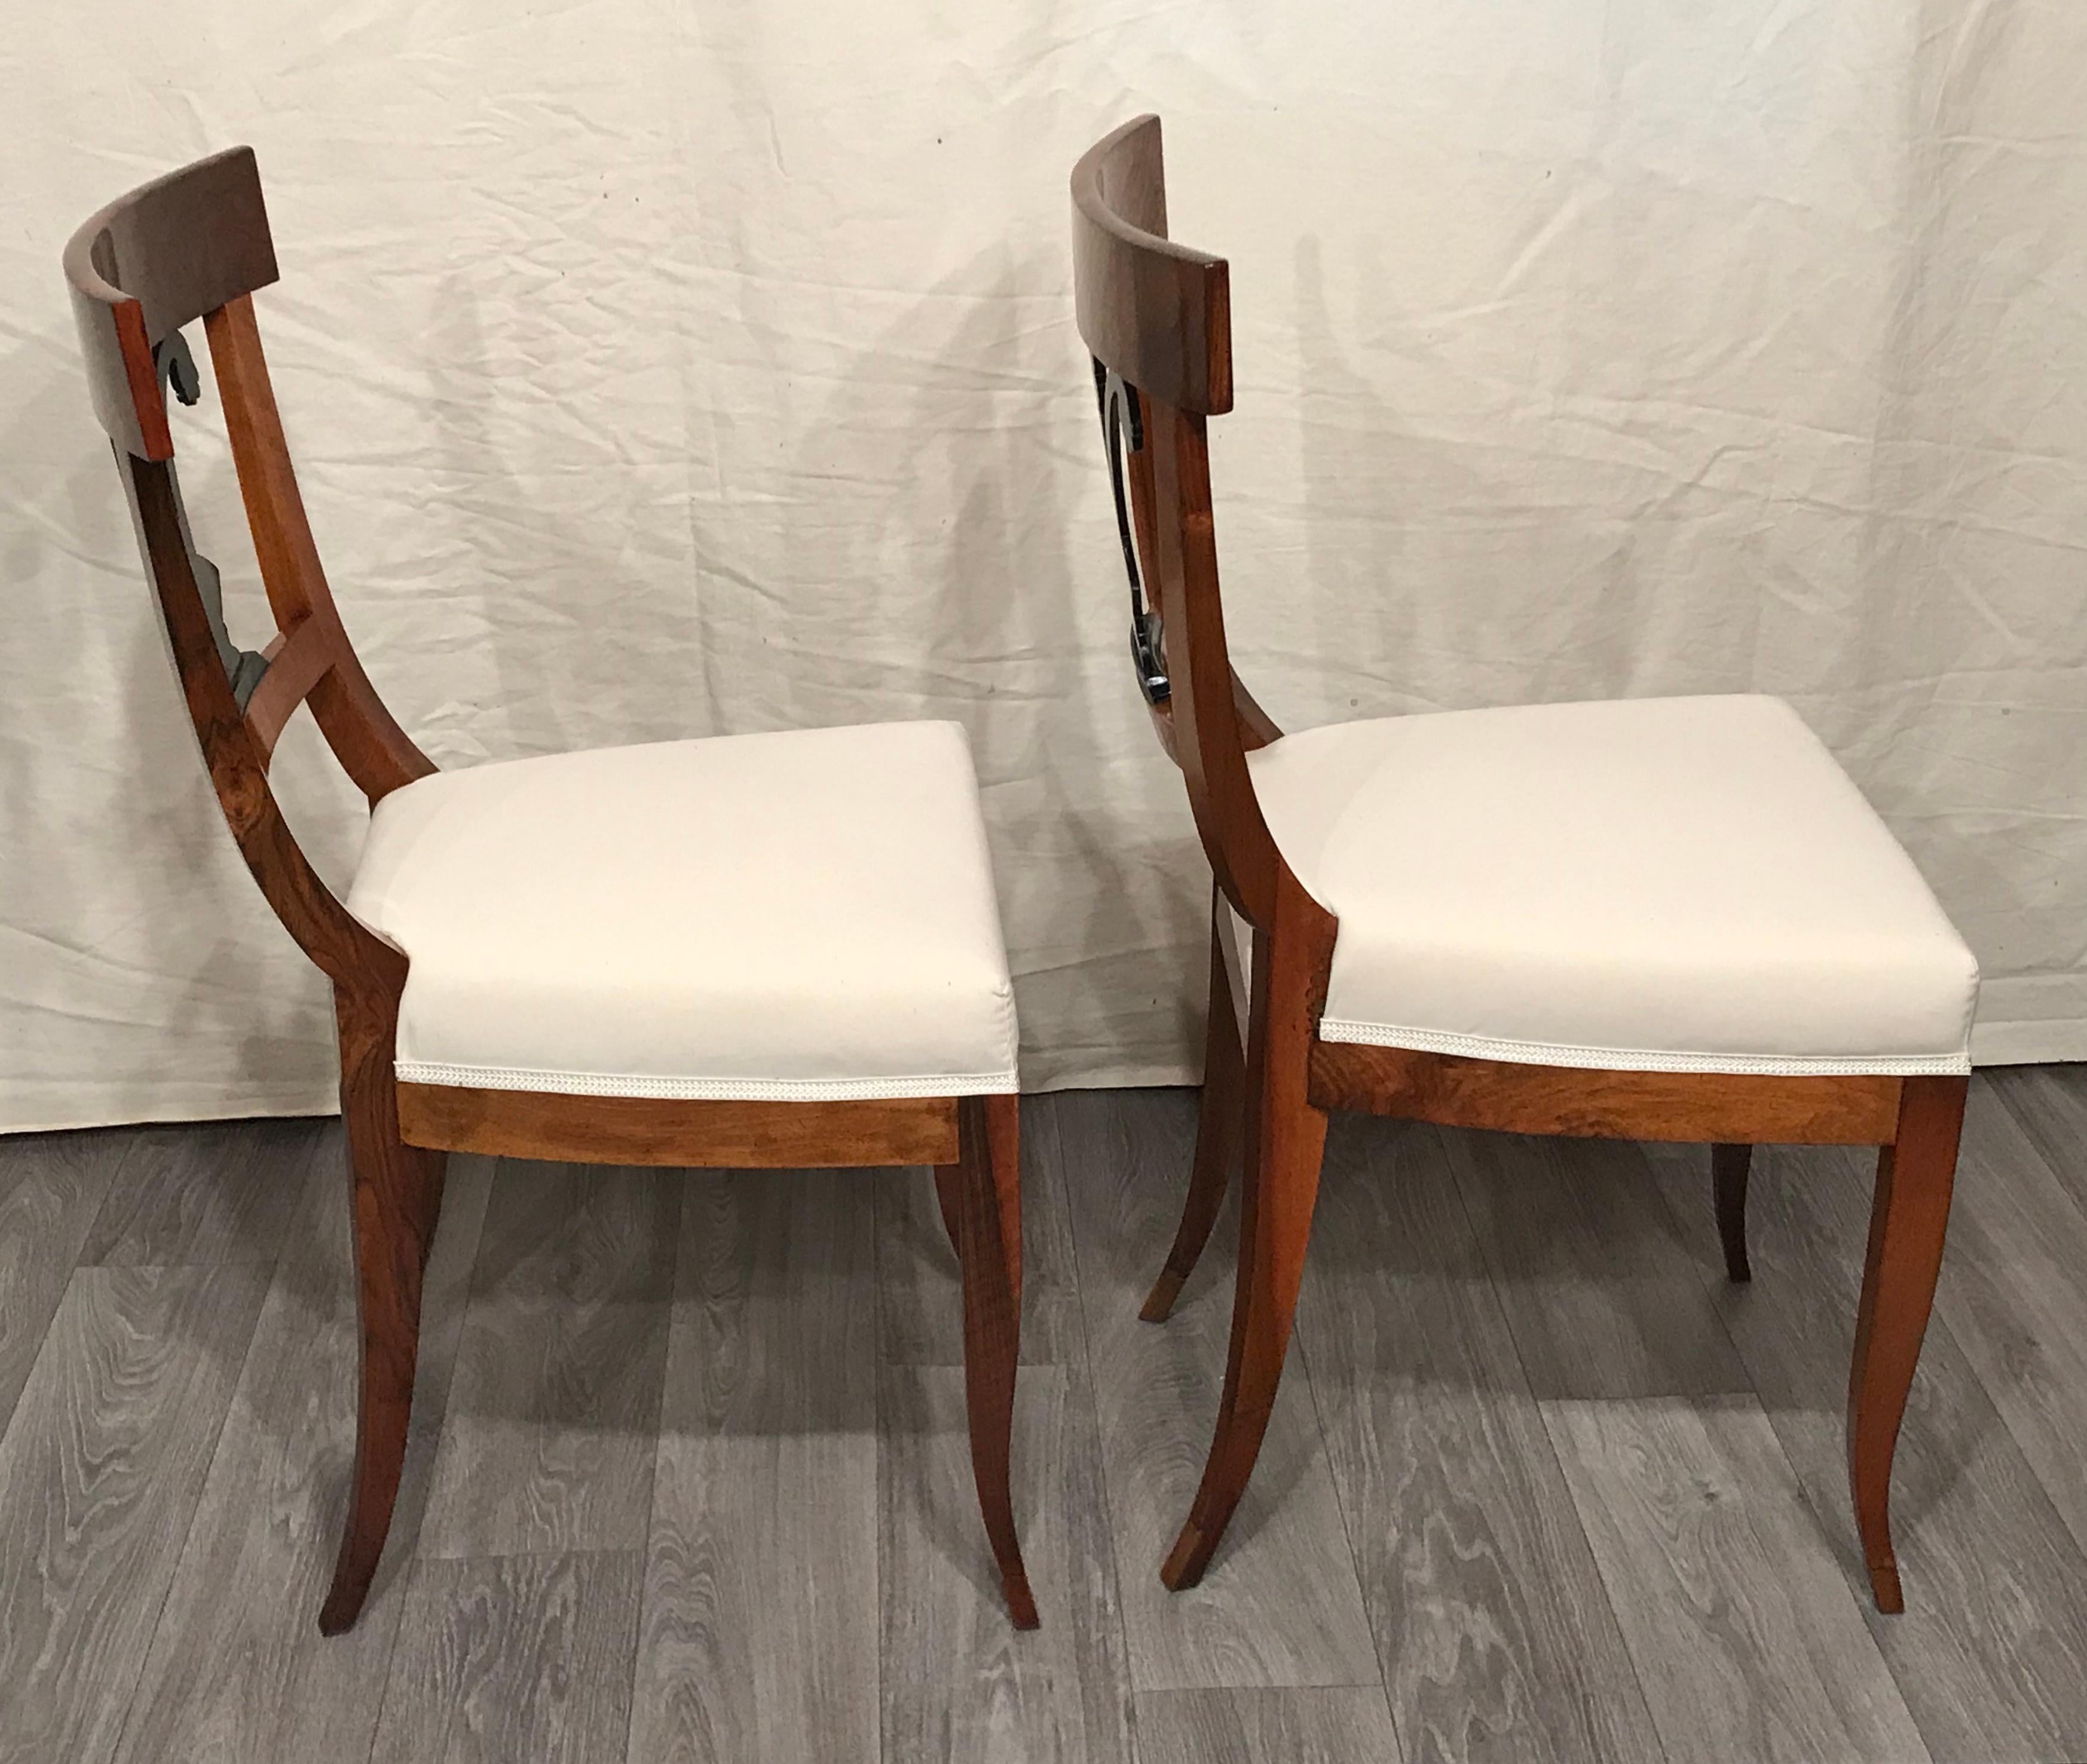 Veneer Pair of Biedermeier Chairs, South German 1820, Walnut